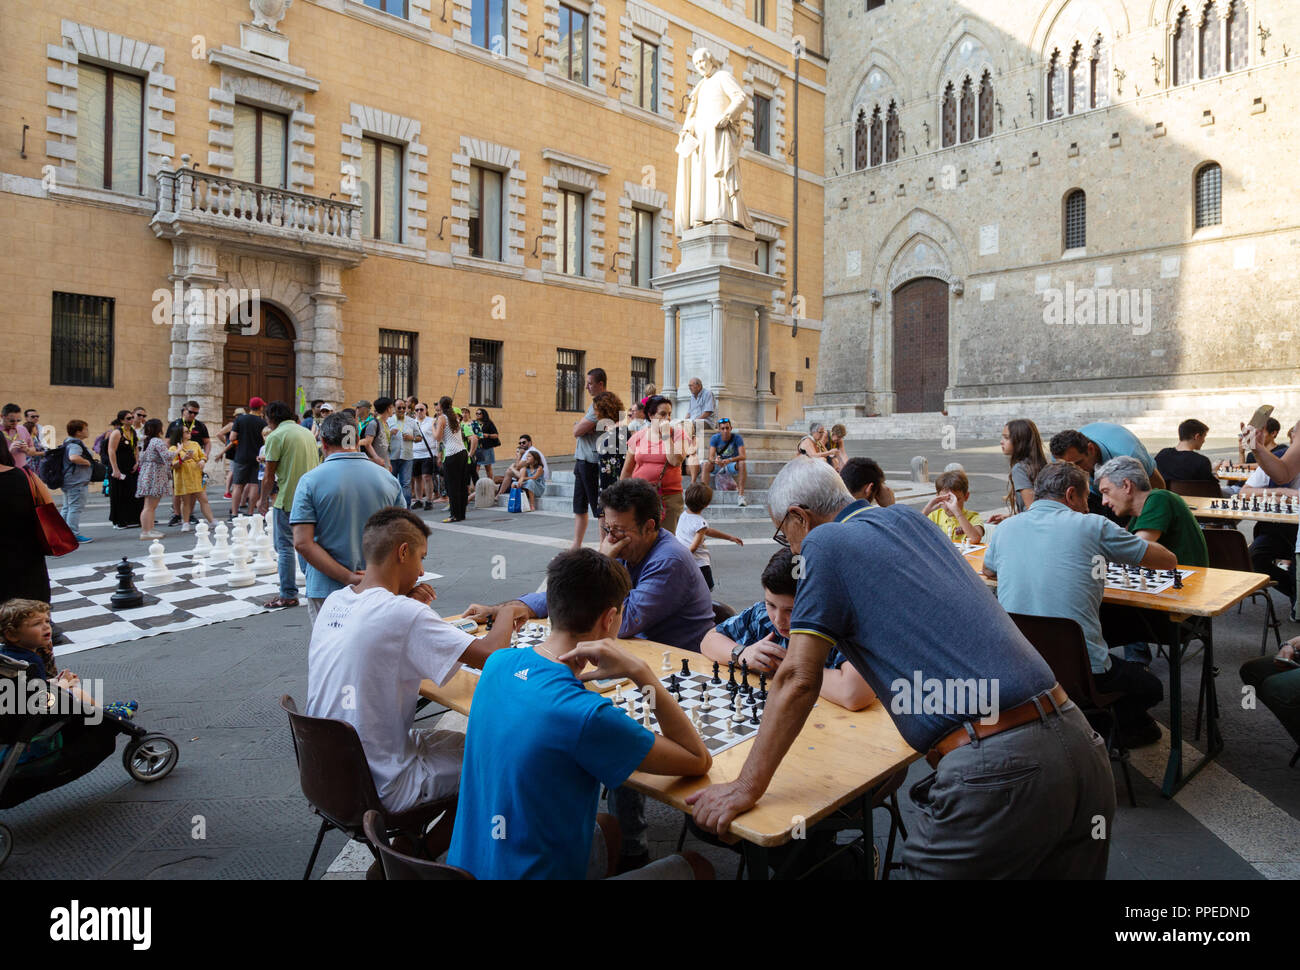 Personnes jouant aux échecs en plein air, Piazza Salimbeni, Sienne, Toscane Italie Europe Banque D'Images